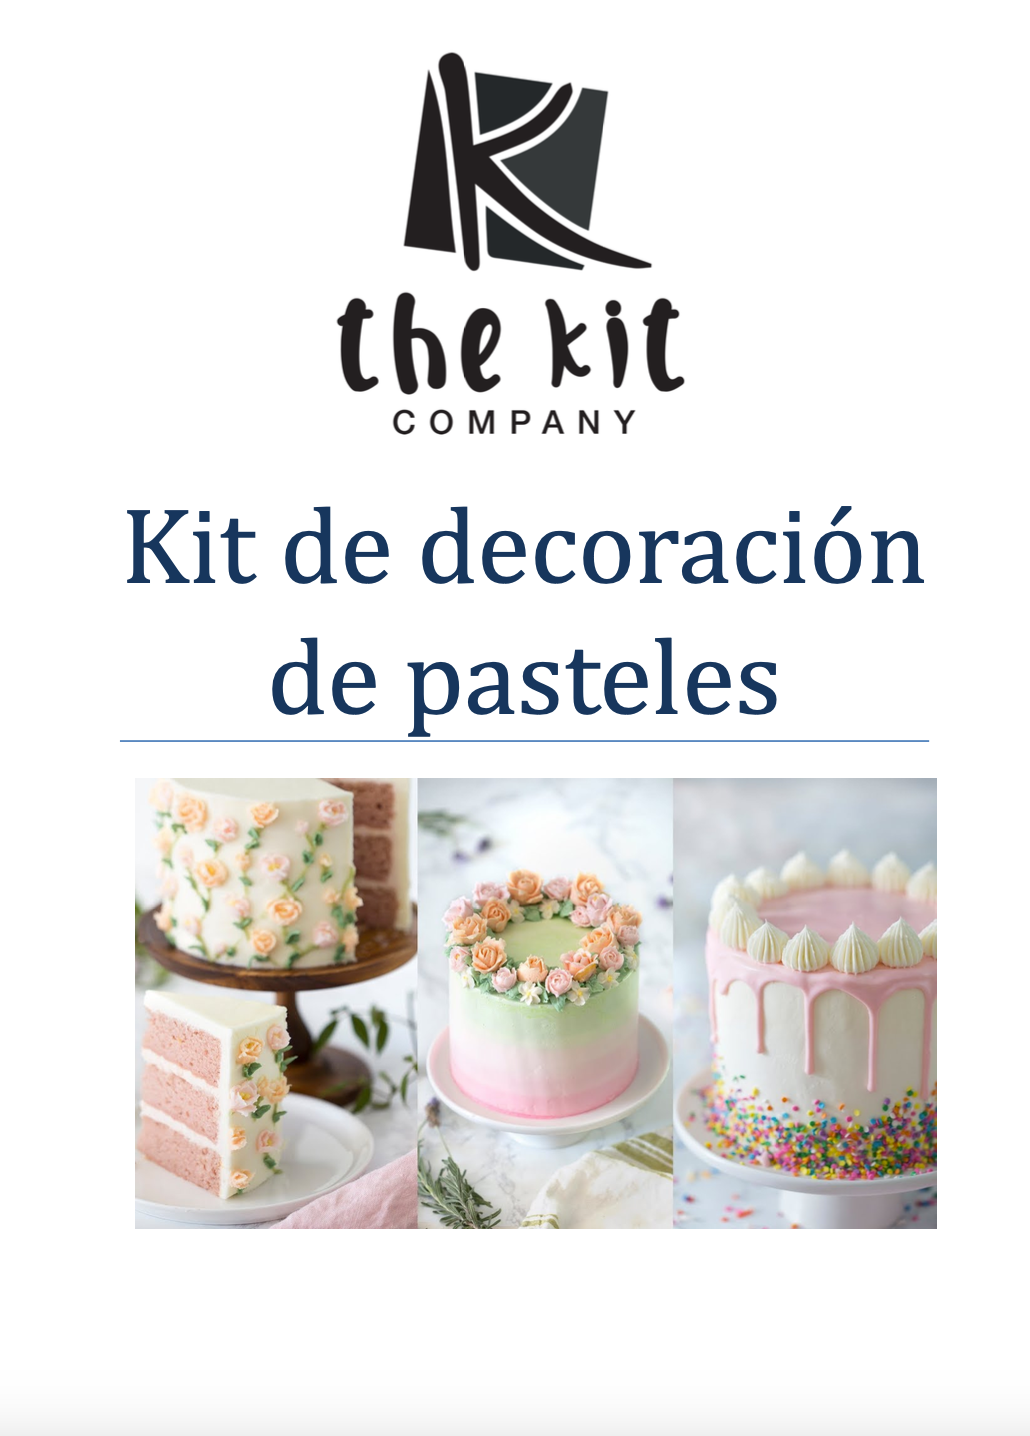 Podręcznik użytkownika zestawu do dekorowania ciast — hiszpański